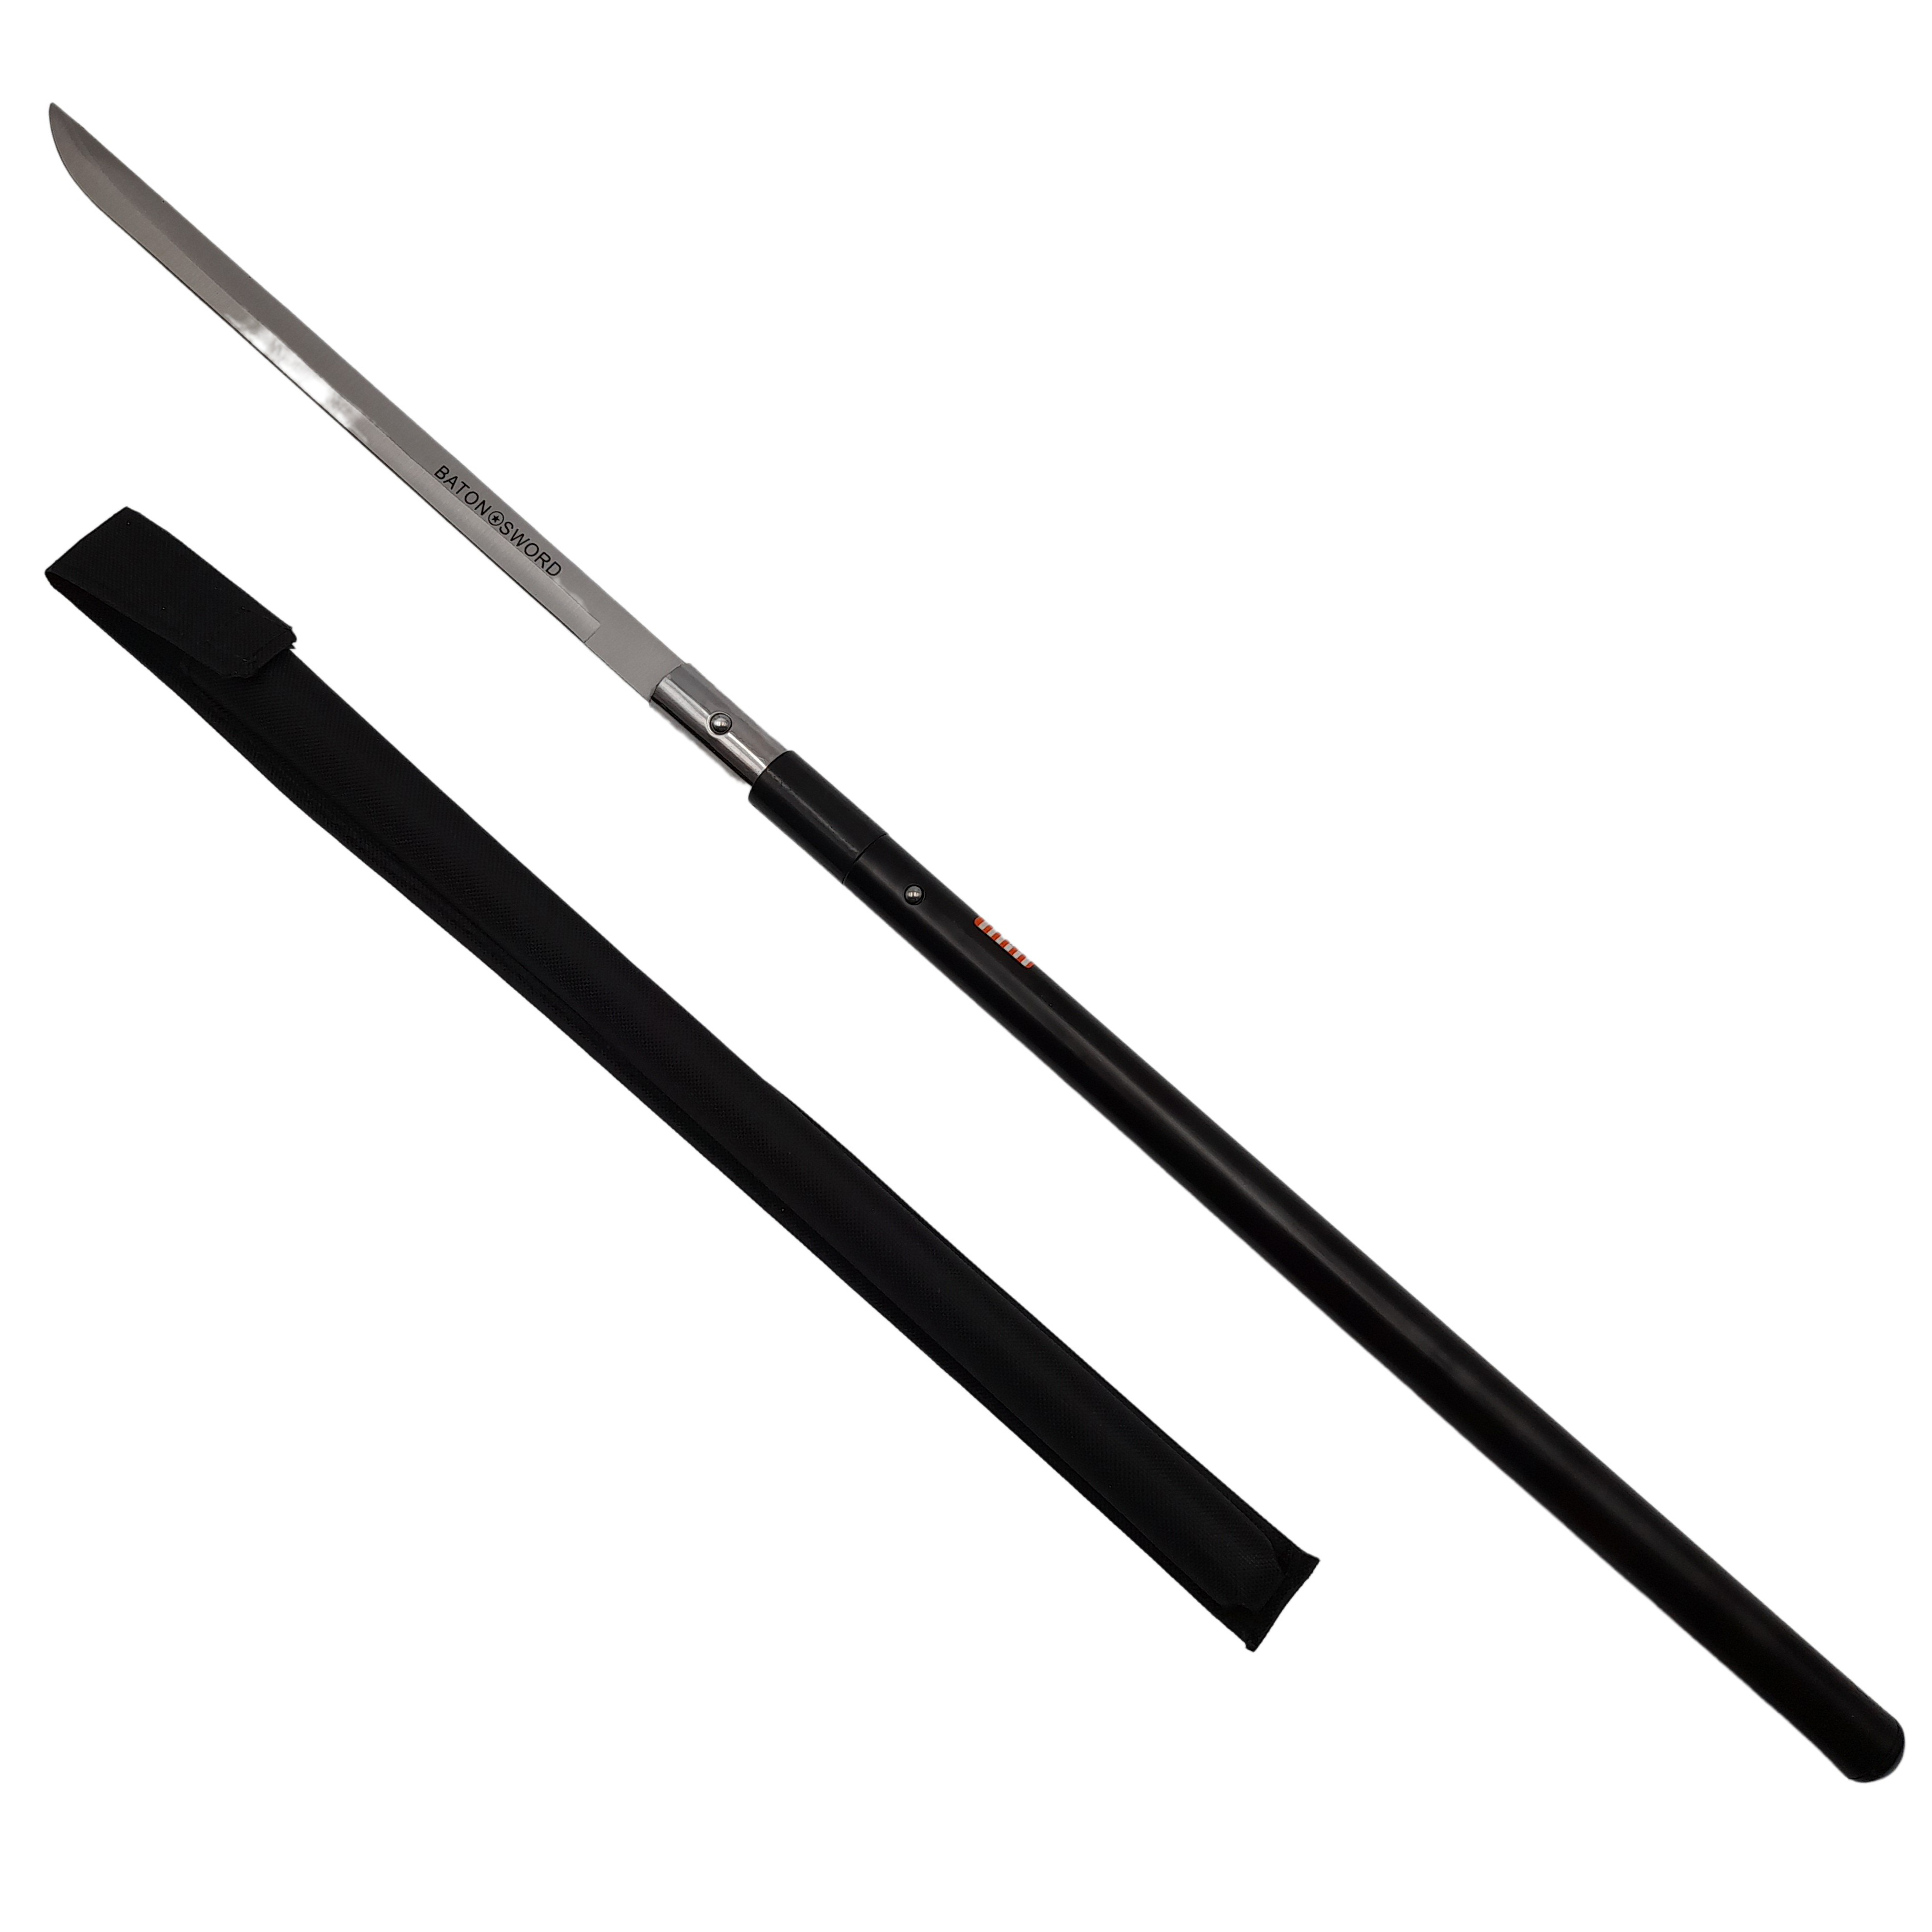 Sabie de vanatoare Ideallstore®, Shaolin Master, model baston, 87 cm, negru, teaca inclusa